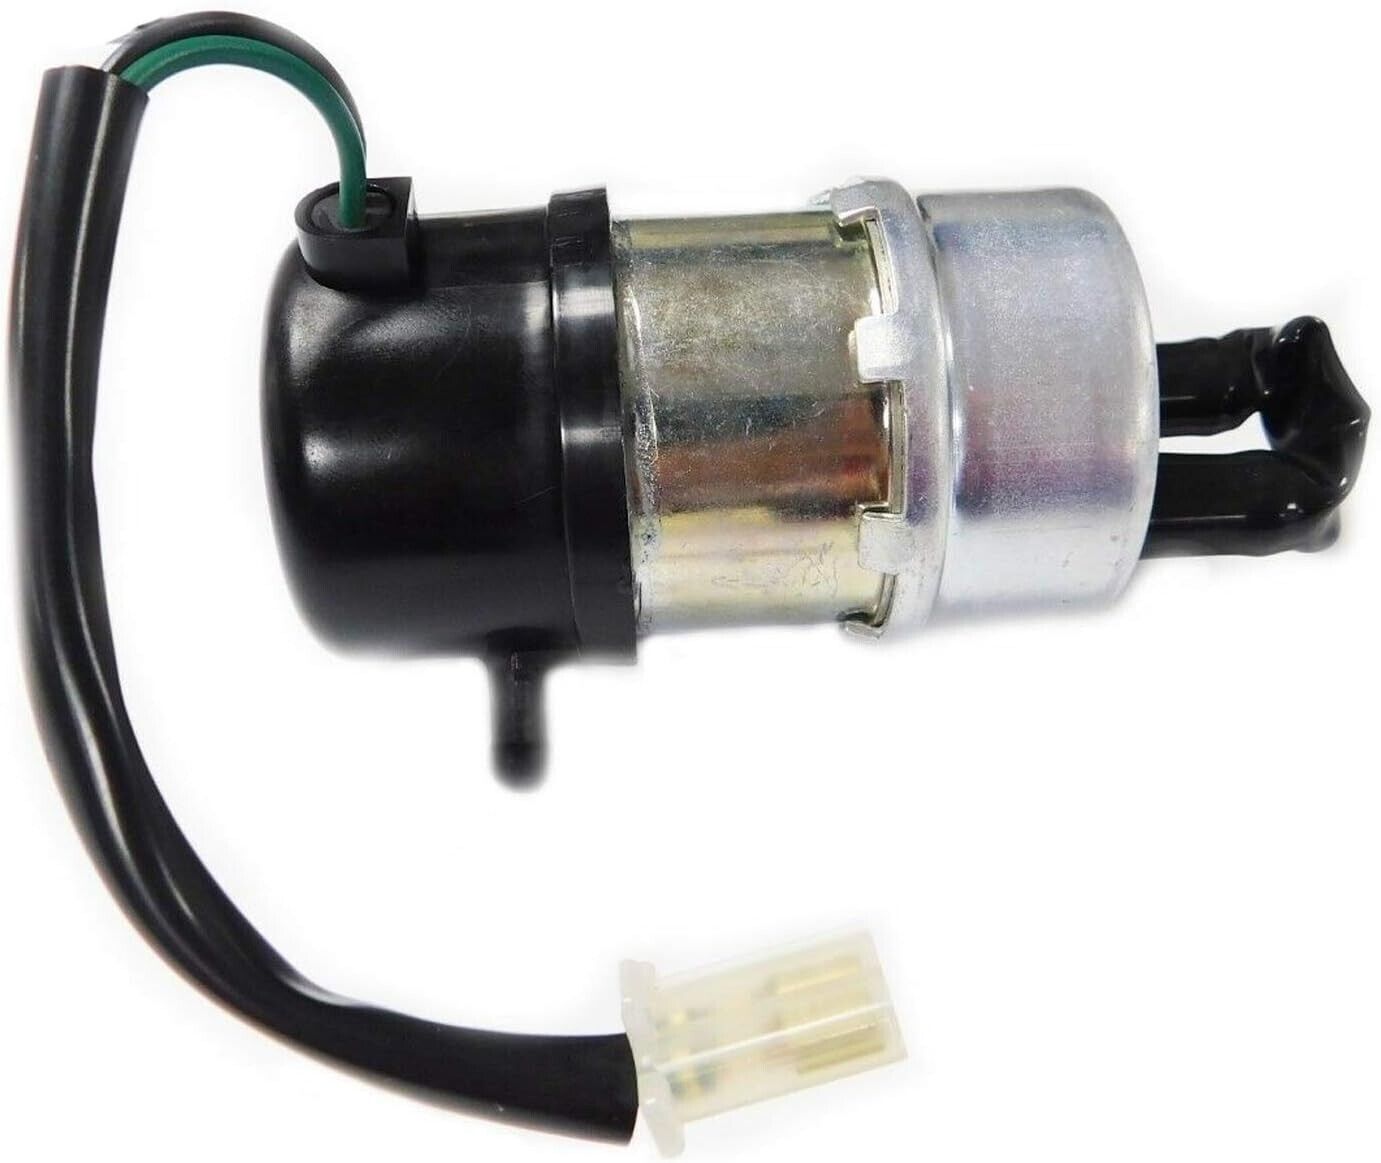 Genuine HONDA 16710-MBA-612 Fuel Pump For Shadow750 VT750C CD CD2 CDA New Parts